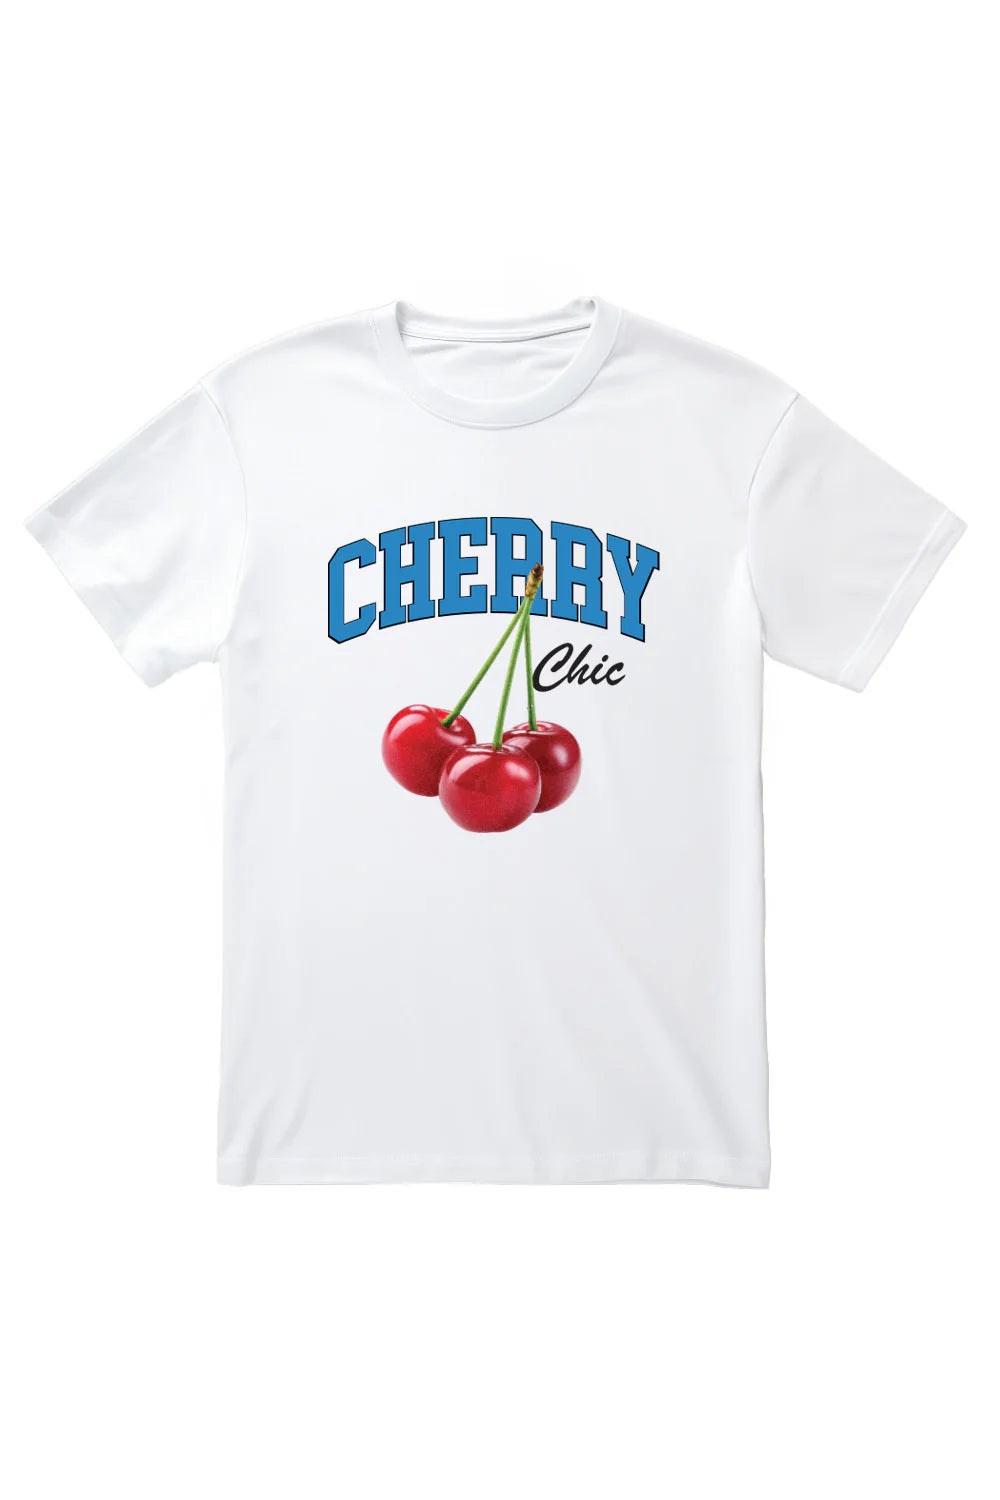 Cherry Chic T-Shirt